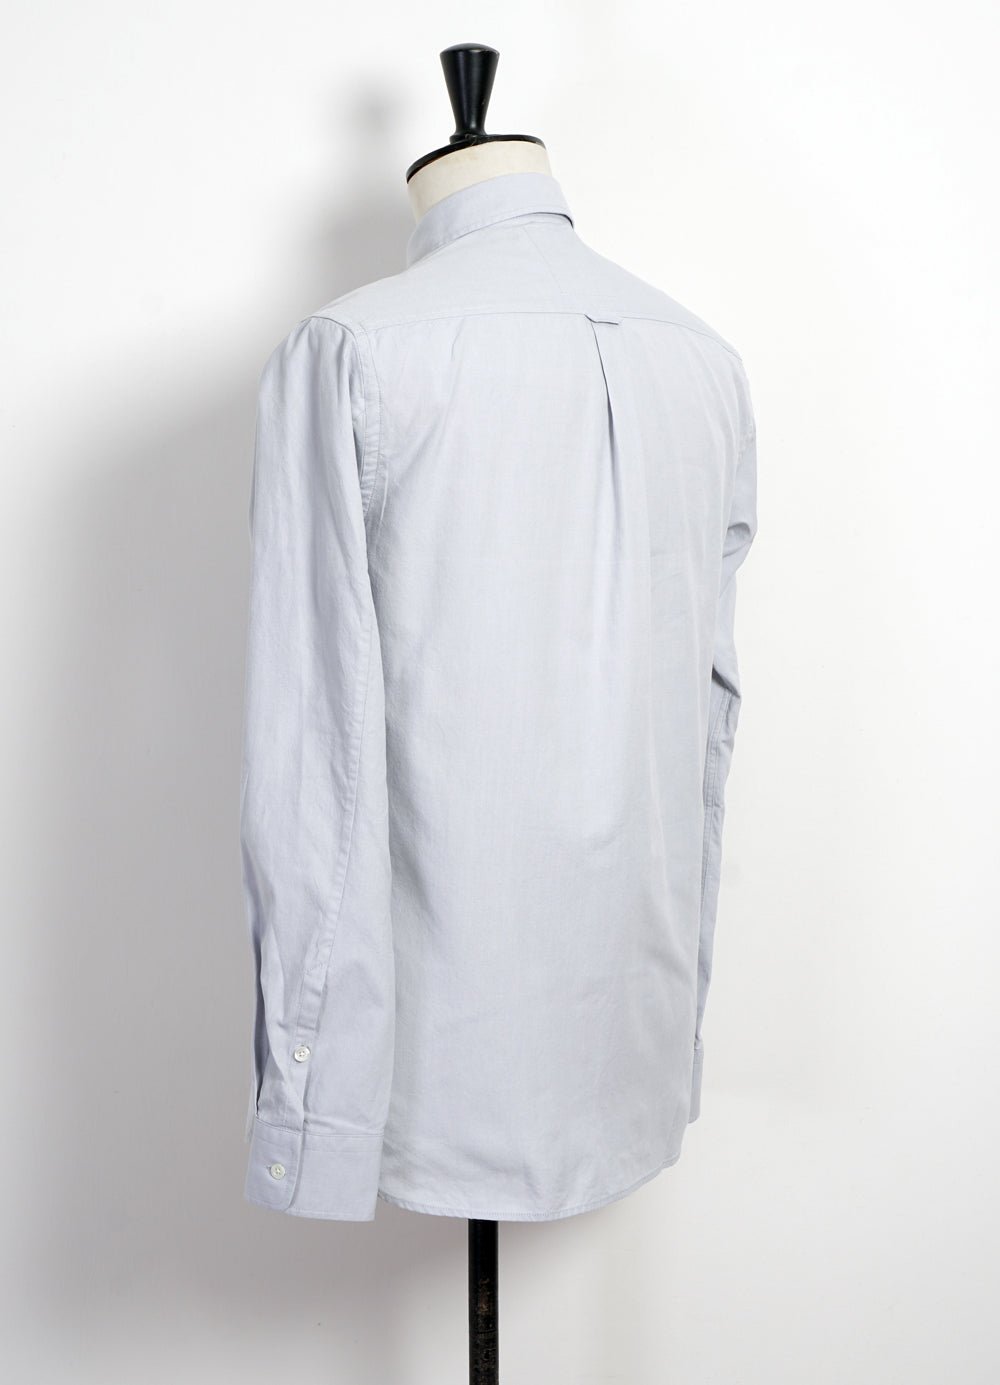 HANSEN Garments - HAAKON | Hidden Button Down Shirt | Silver - HANSEN Garments